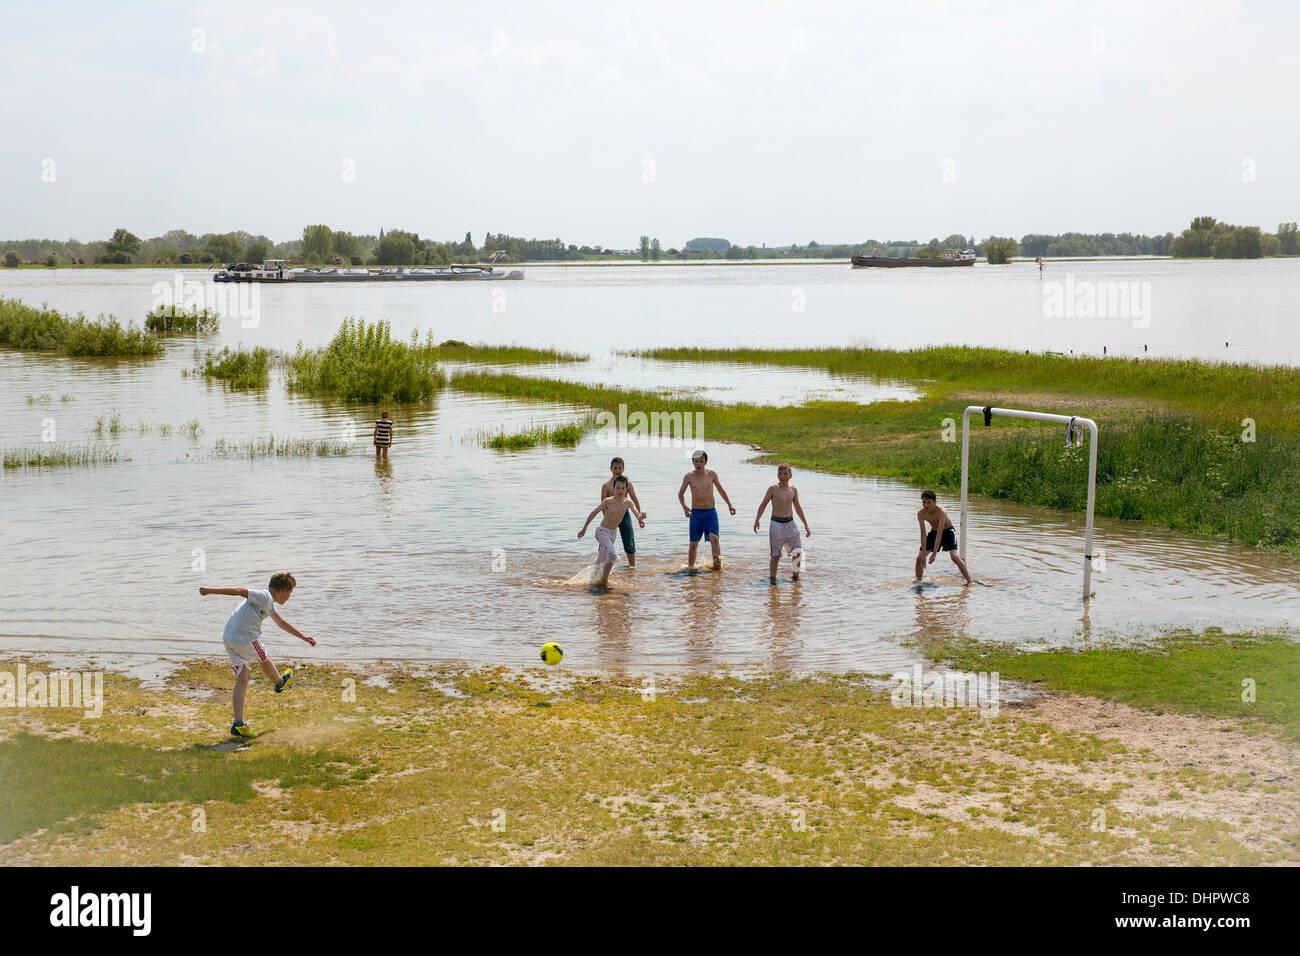 Pays-bas, Ochten, les garçons jouent au football dans les plaines d'inondation inondé de la rivière Waal en raison de l'eau élevée. Banque D'Images